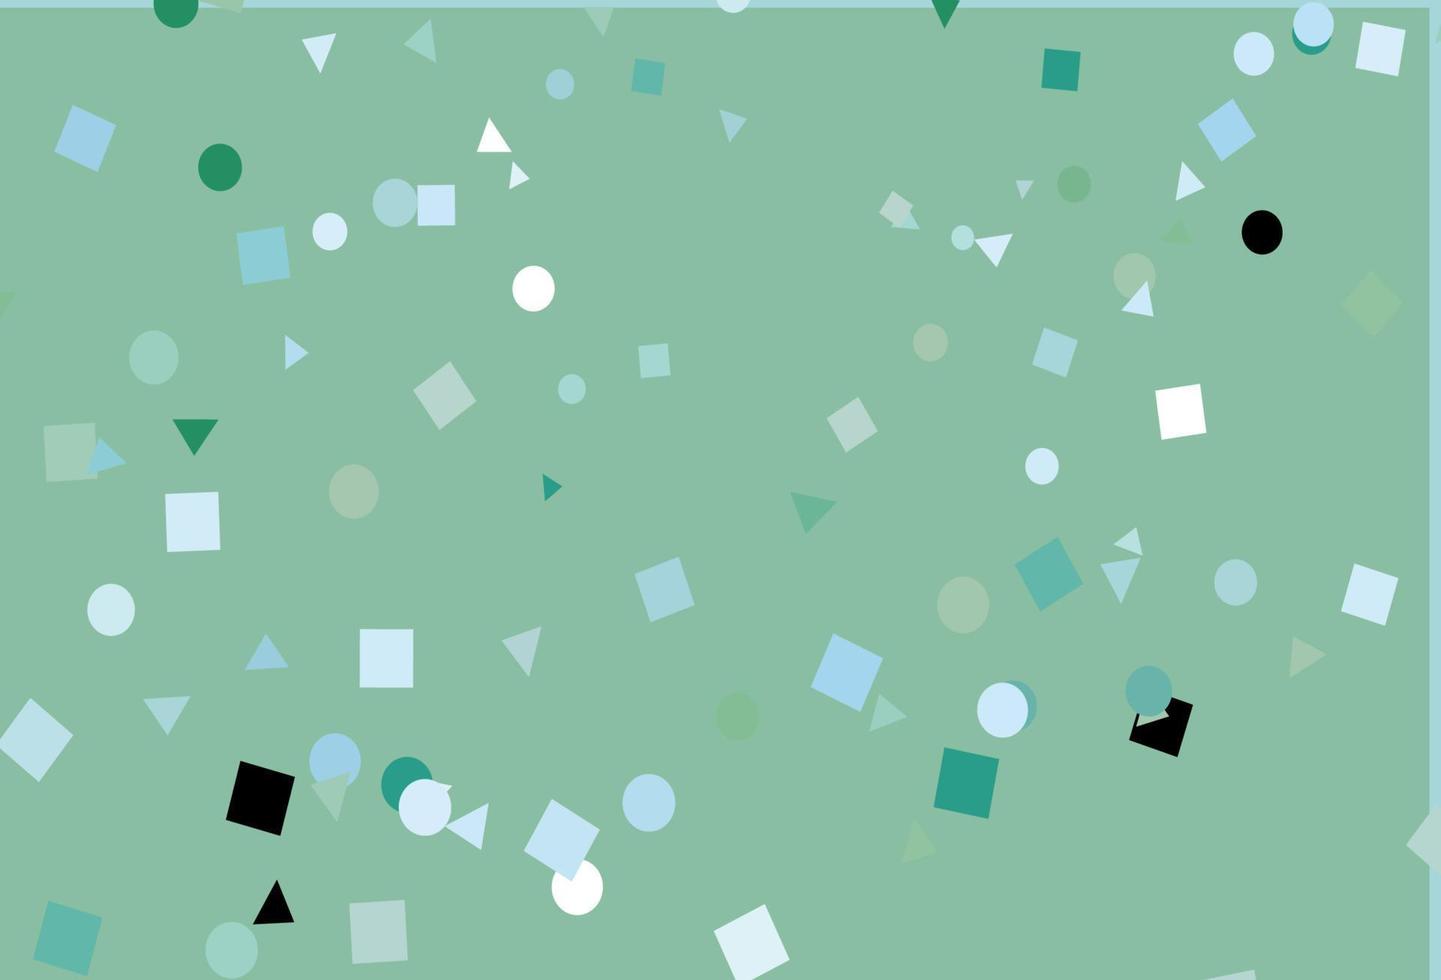 padrão de vetor azul e verde claro em estilo poligonal com círculos.